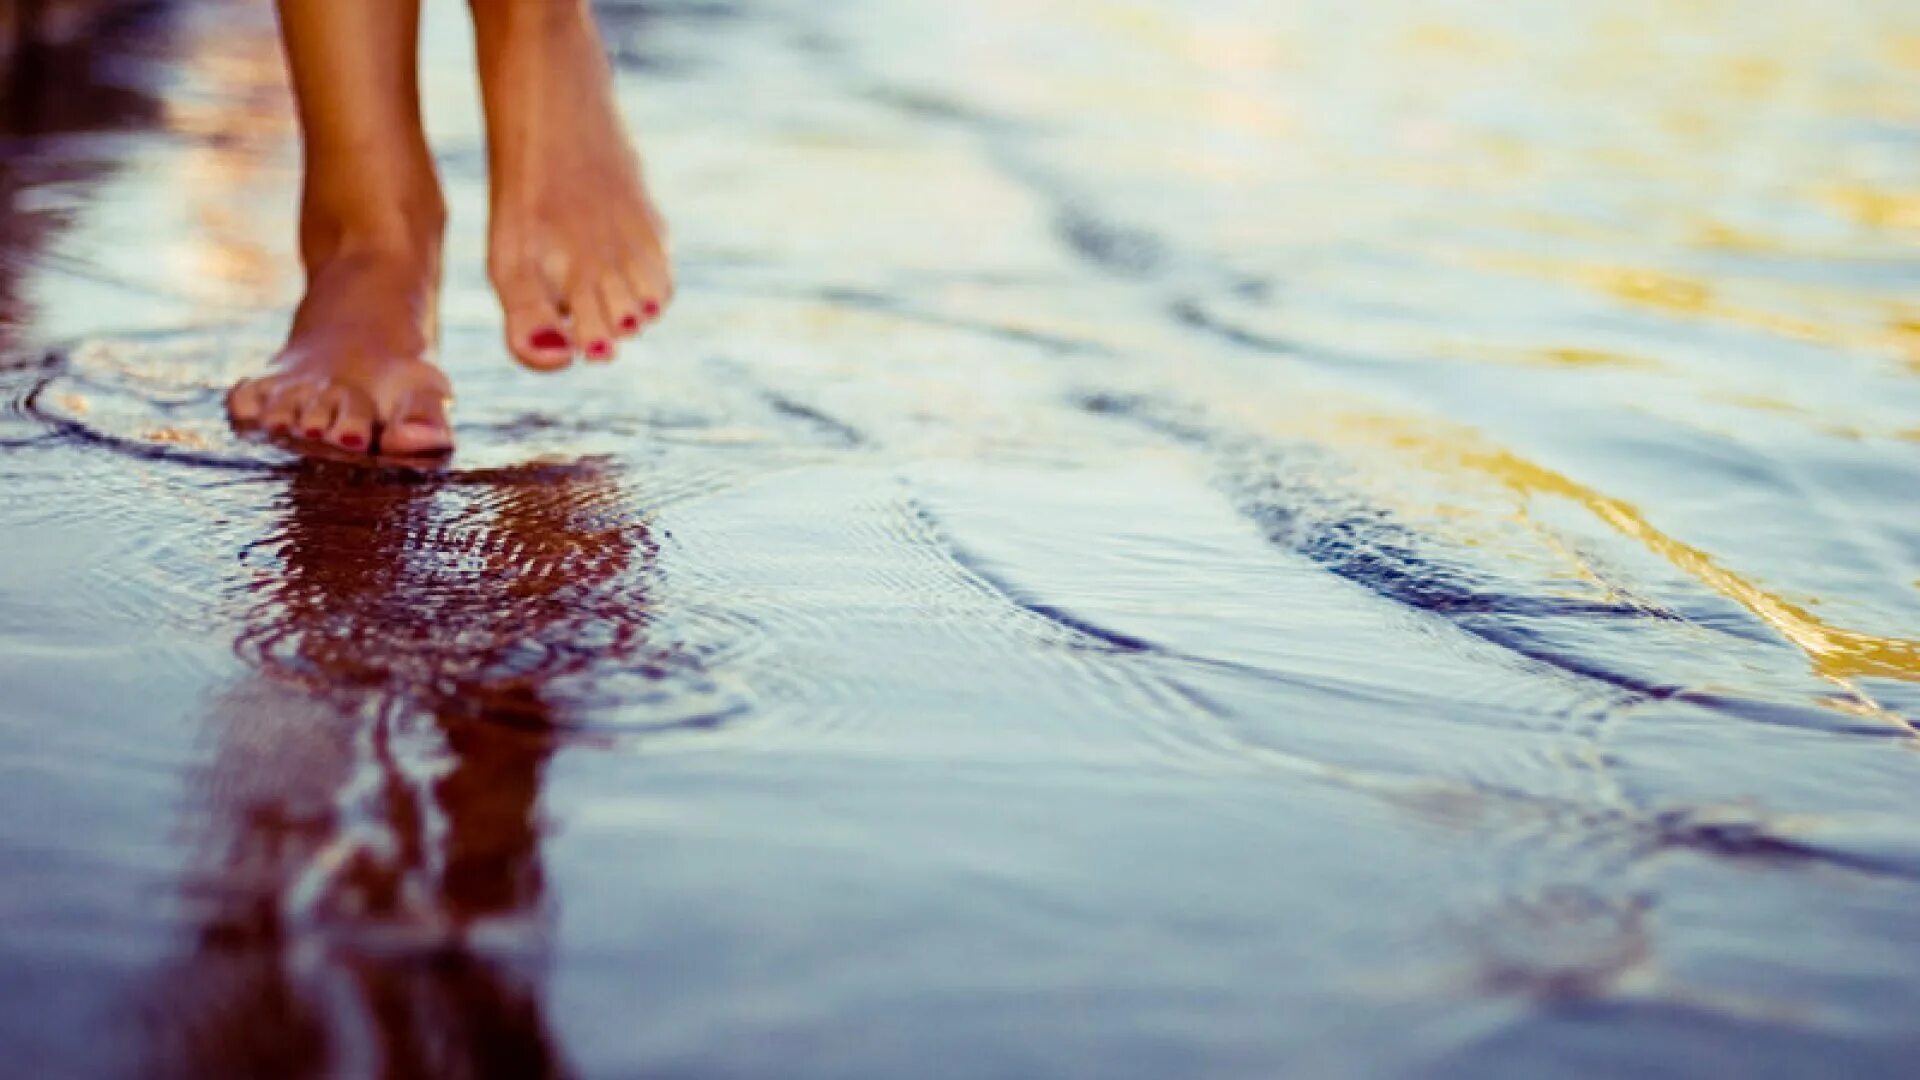 Ценил положительной. Ноги по воде. Босые ноги в воде. Ноги в луже. Маленькими шагами к счастью.